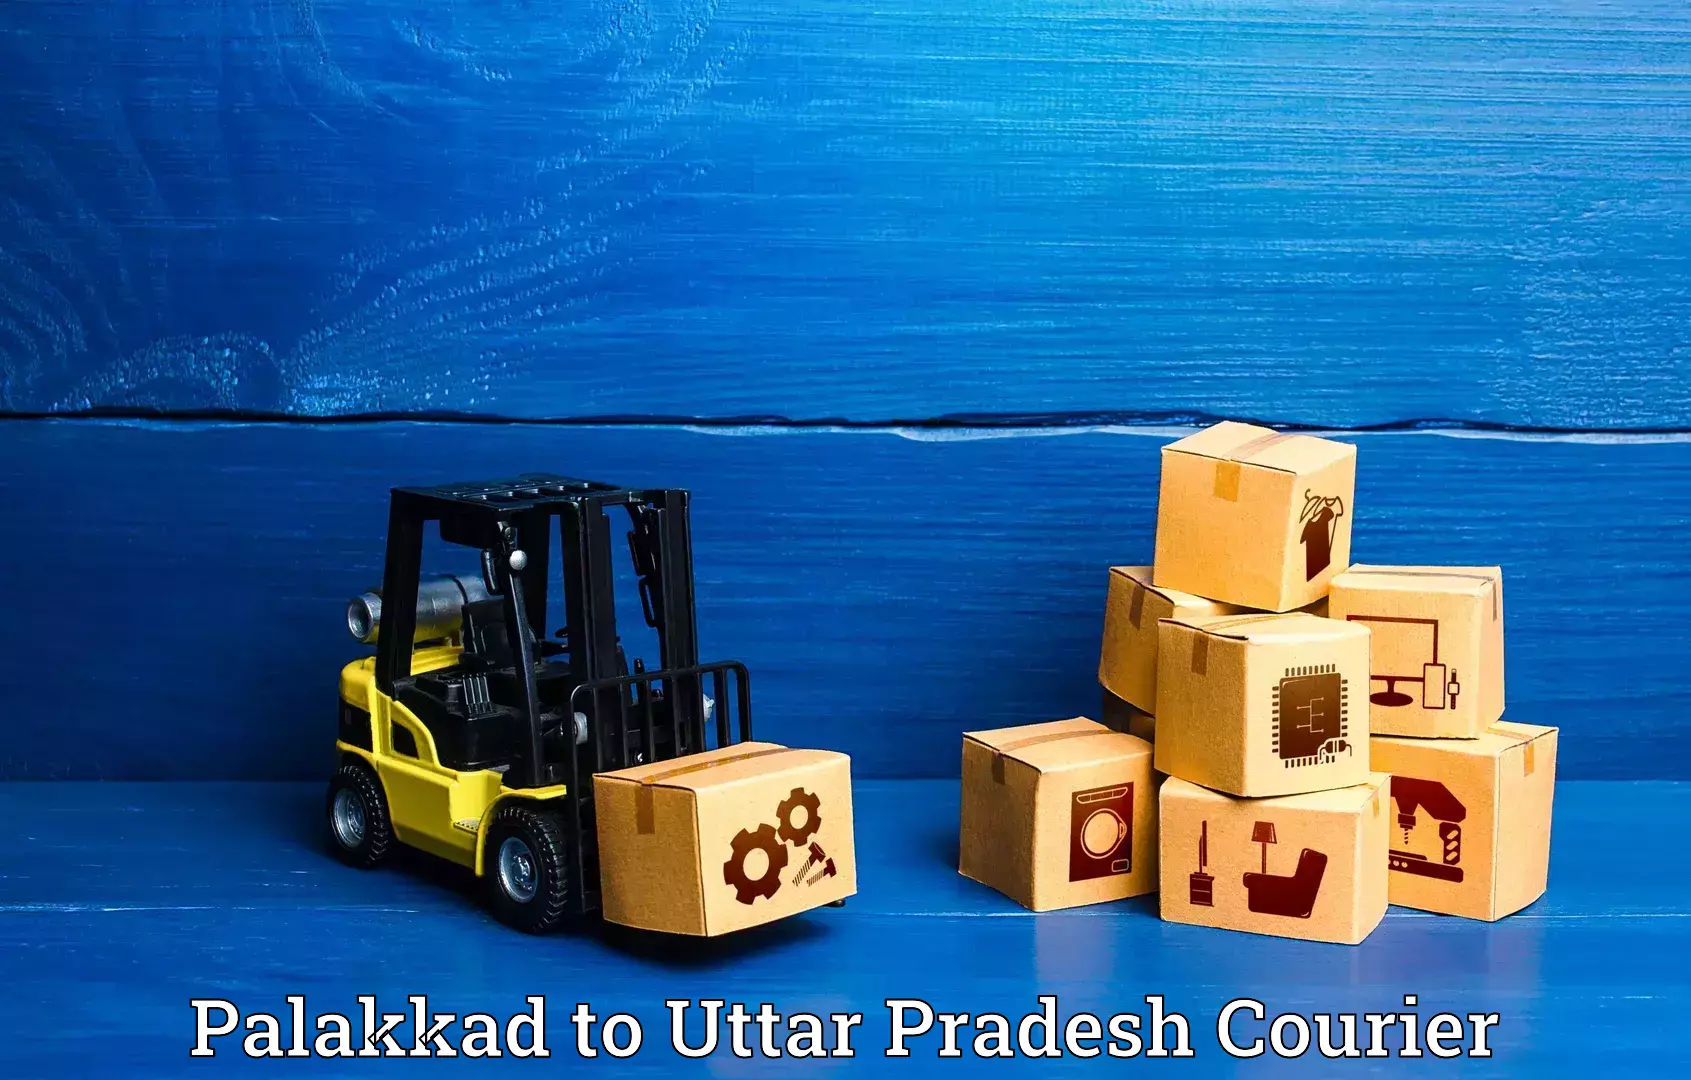 Urgent luggage shipment Palakkad to Amethi